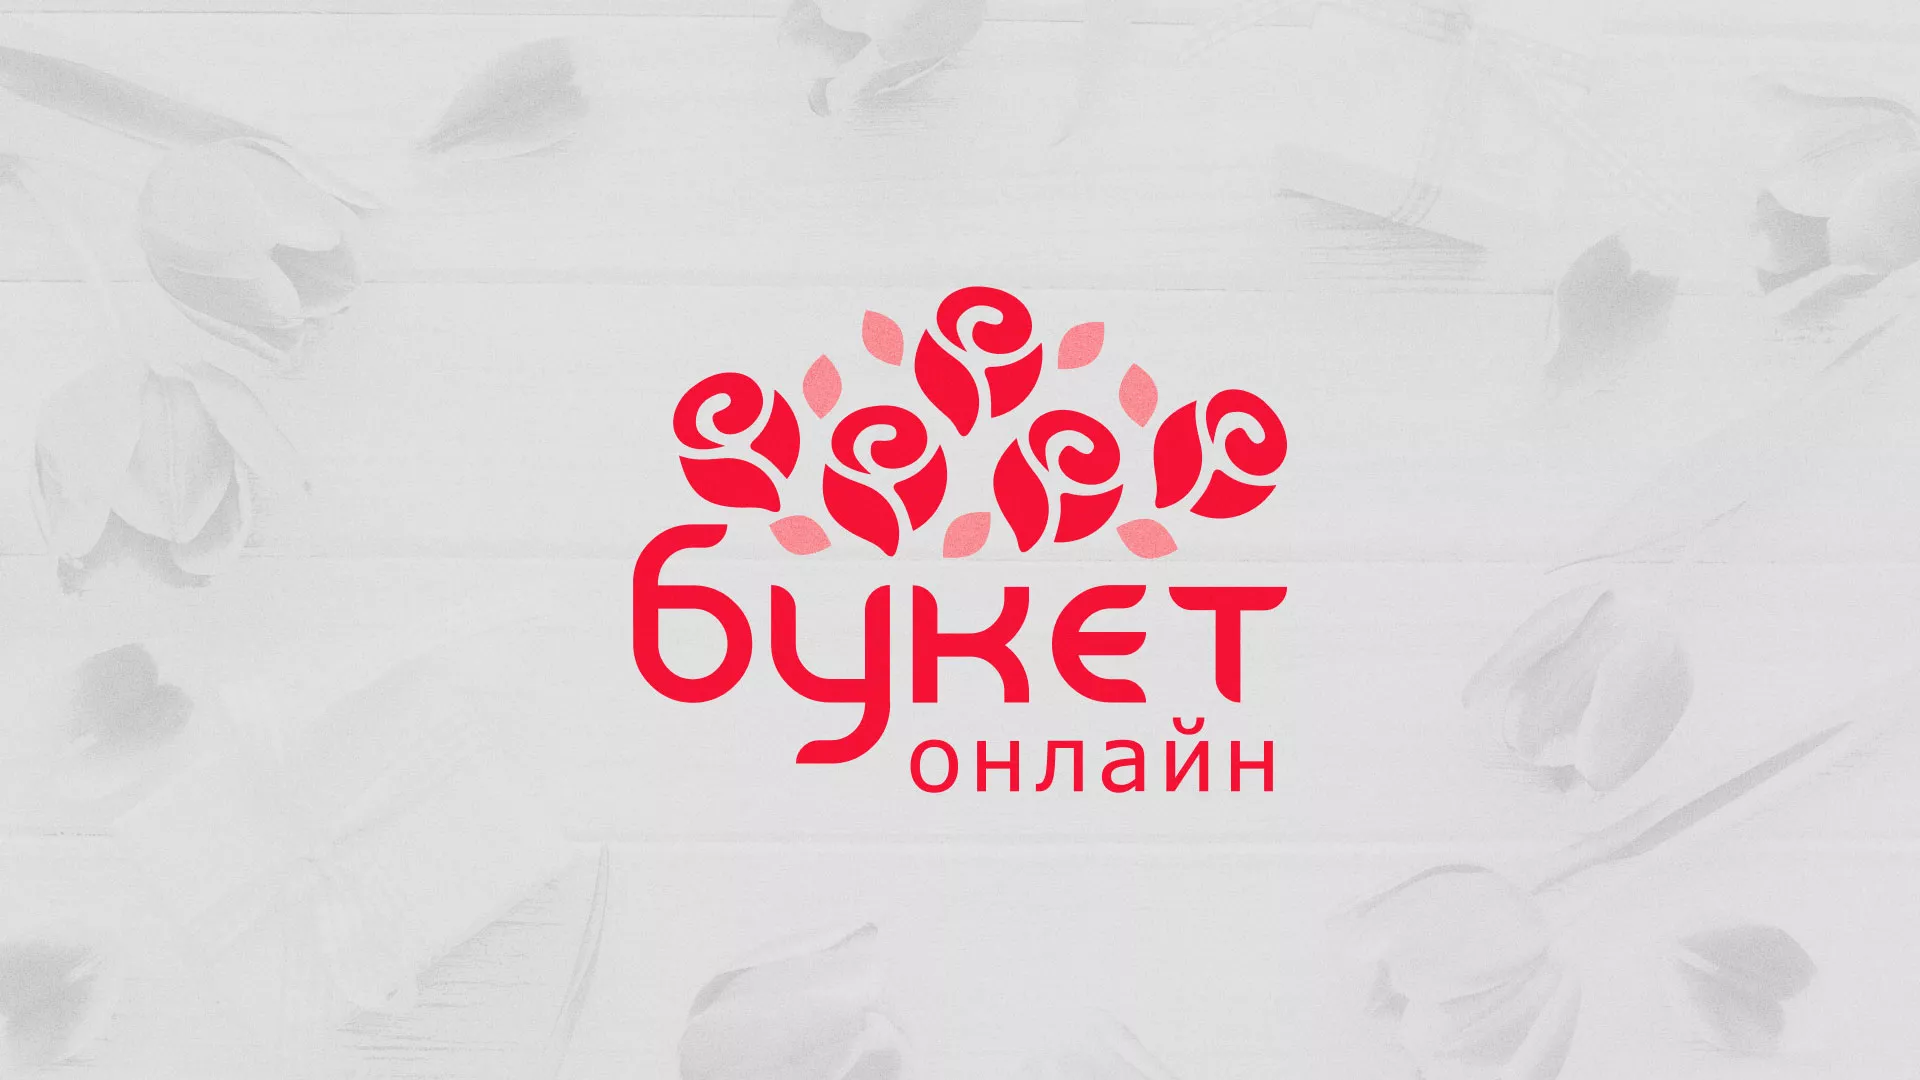 Создание интернет-магазина «Букет-онлайн» по цветам в Приморско-Ахтарске